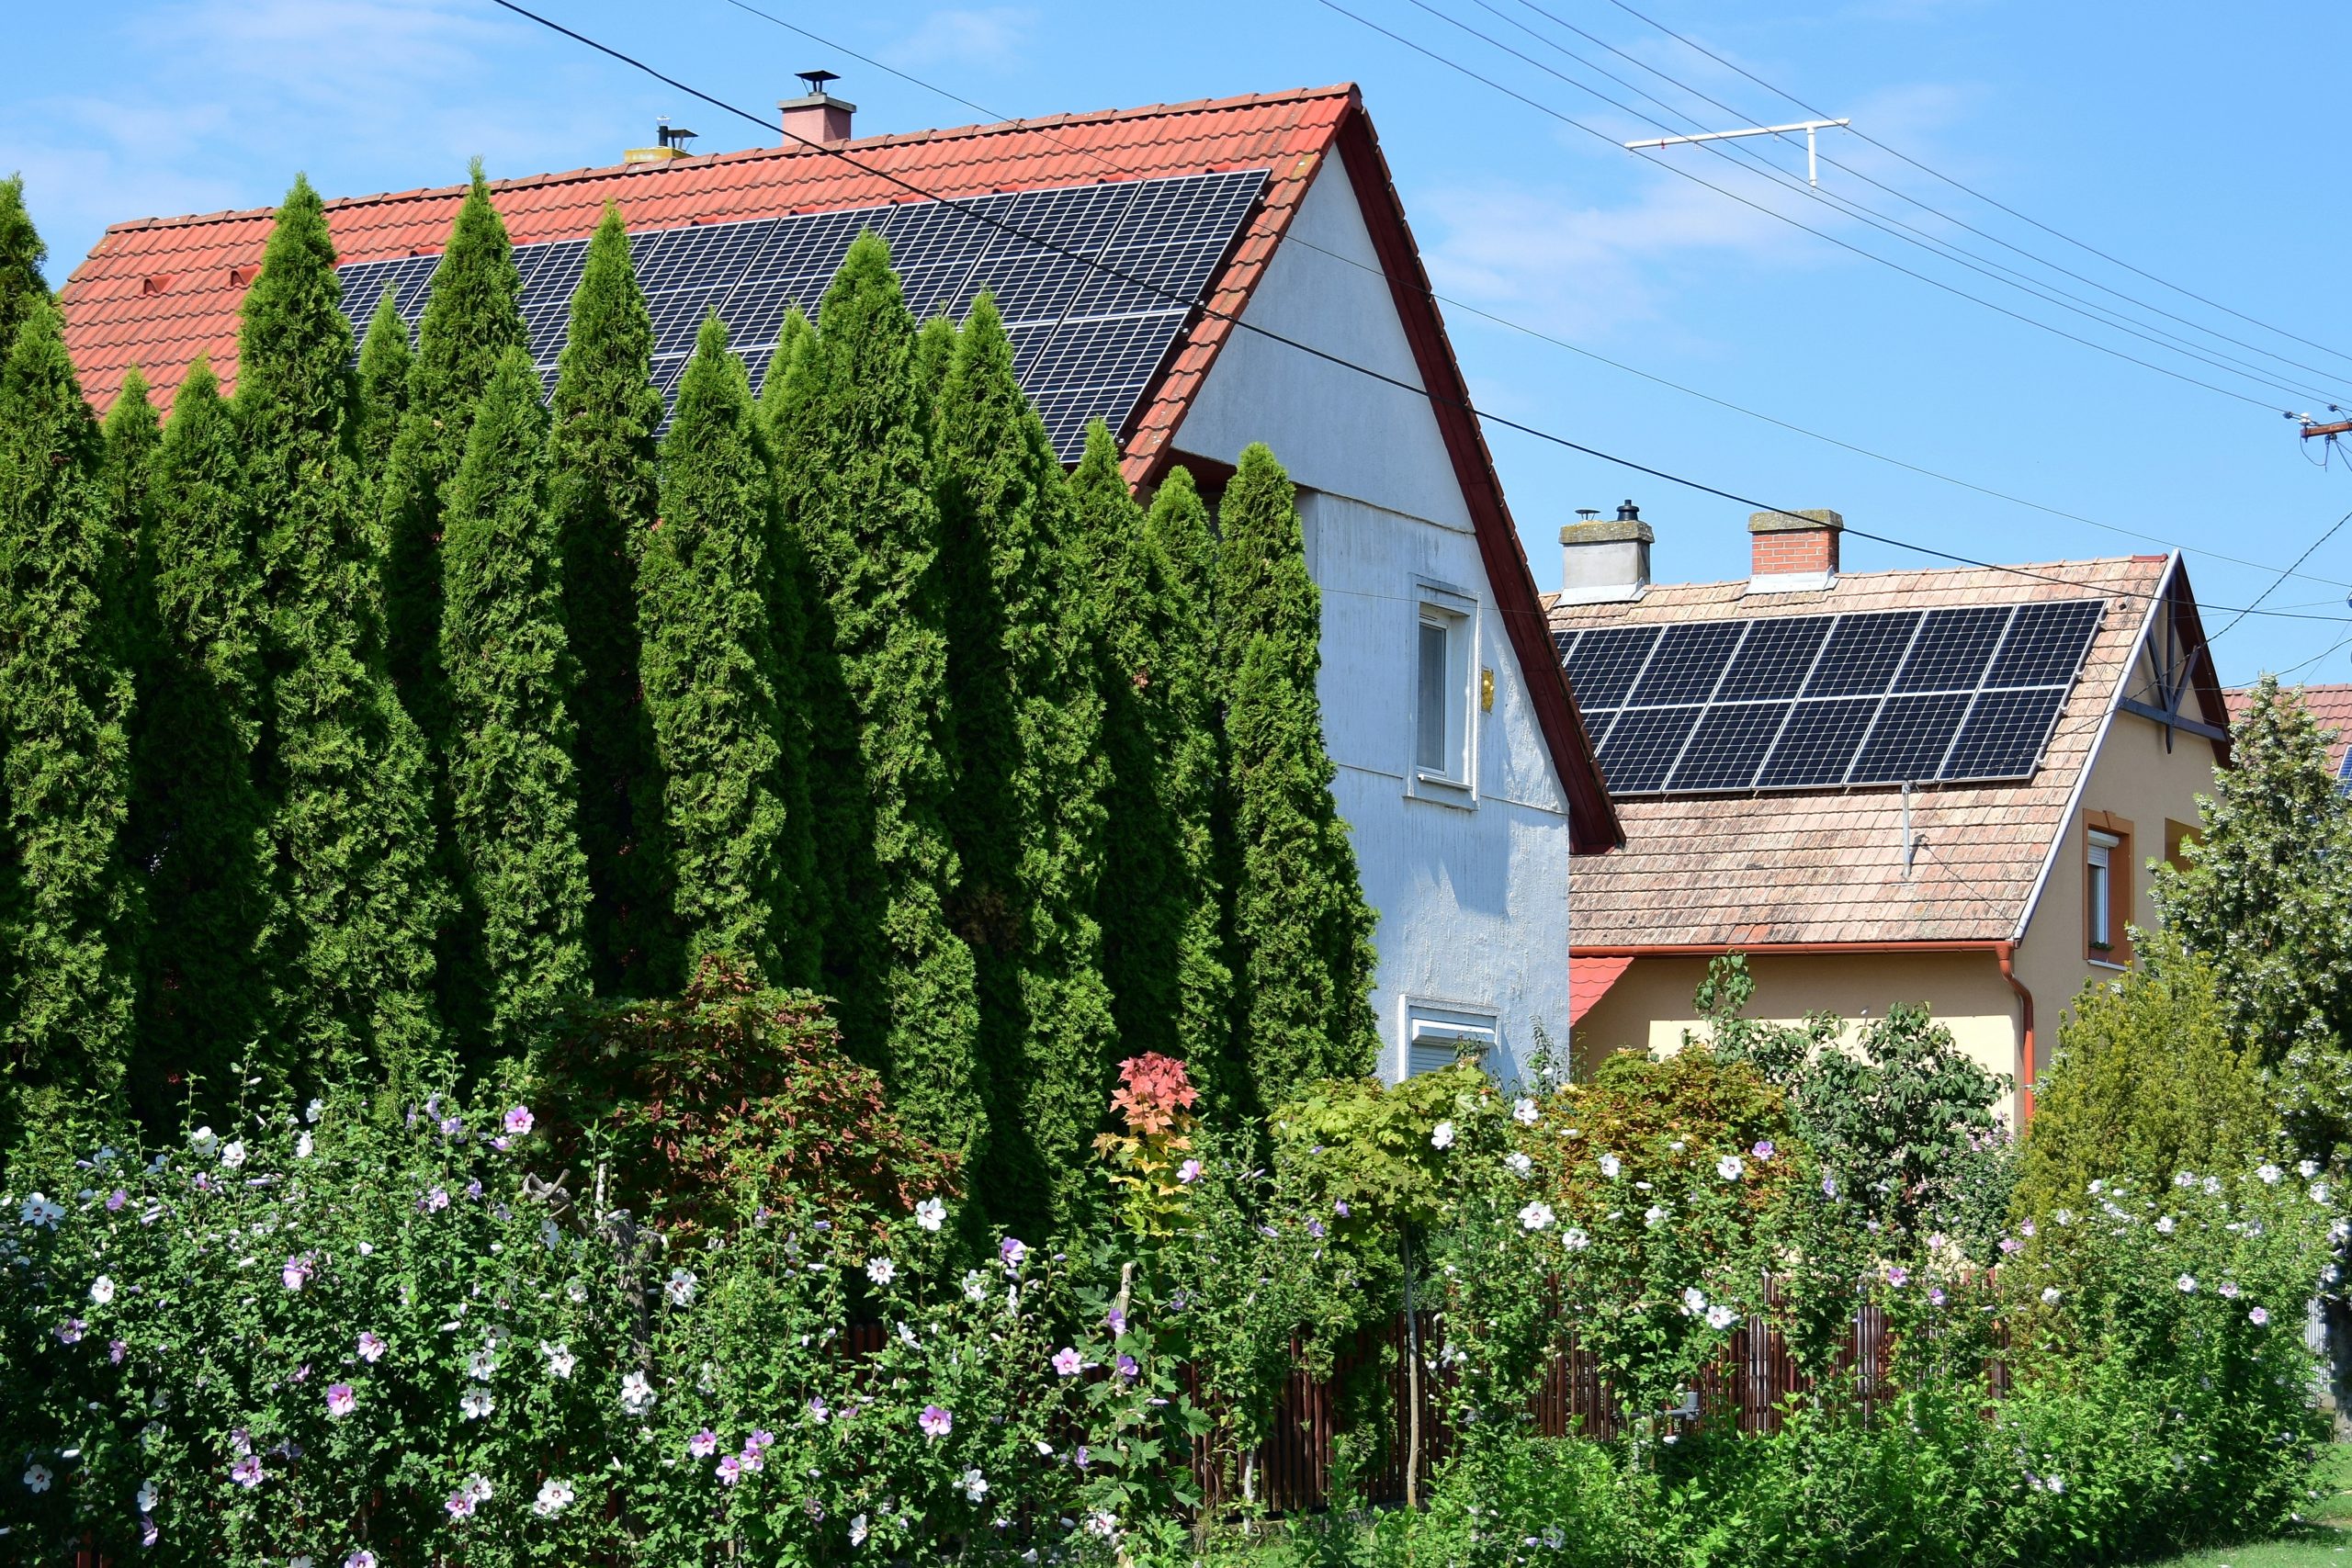 Solarausschreibung für Wohngebäude ist ein voller Erfolg